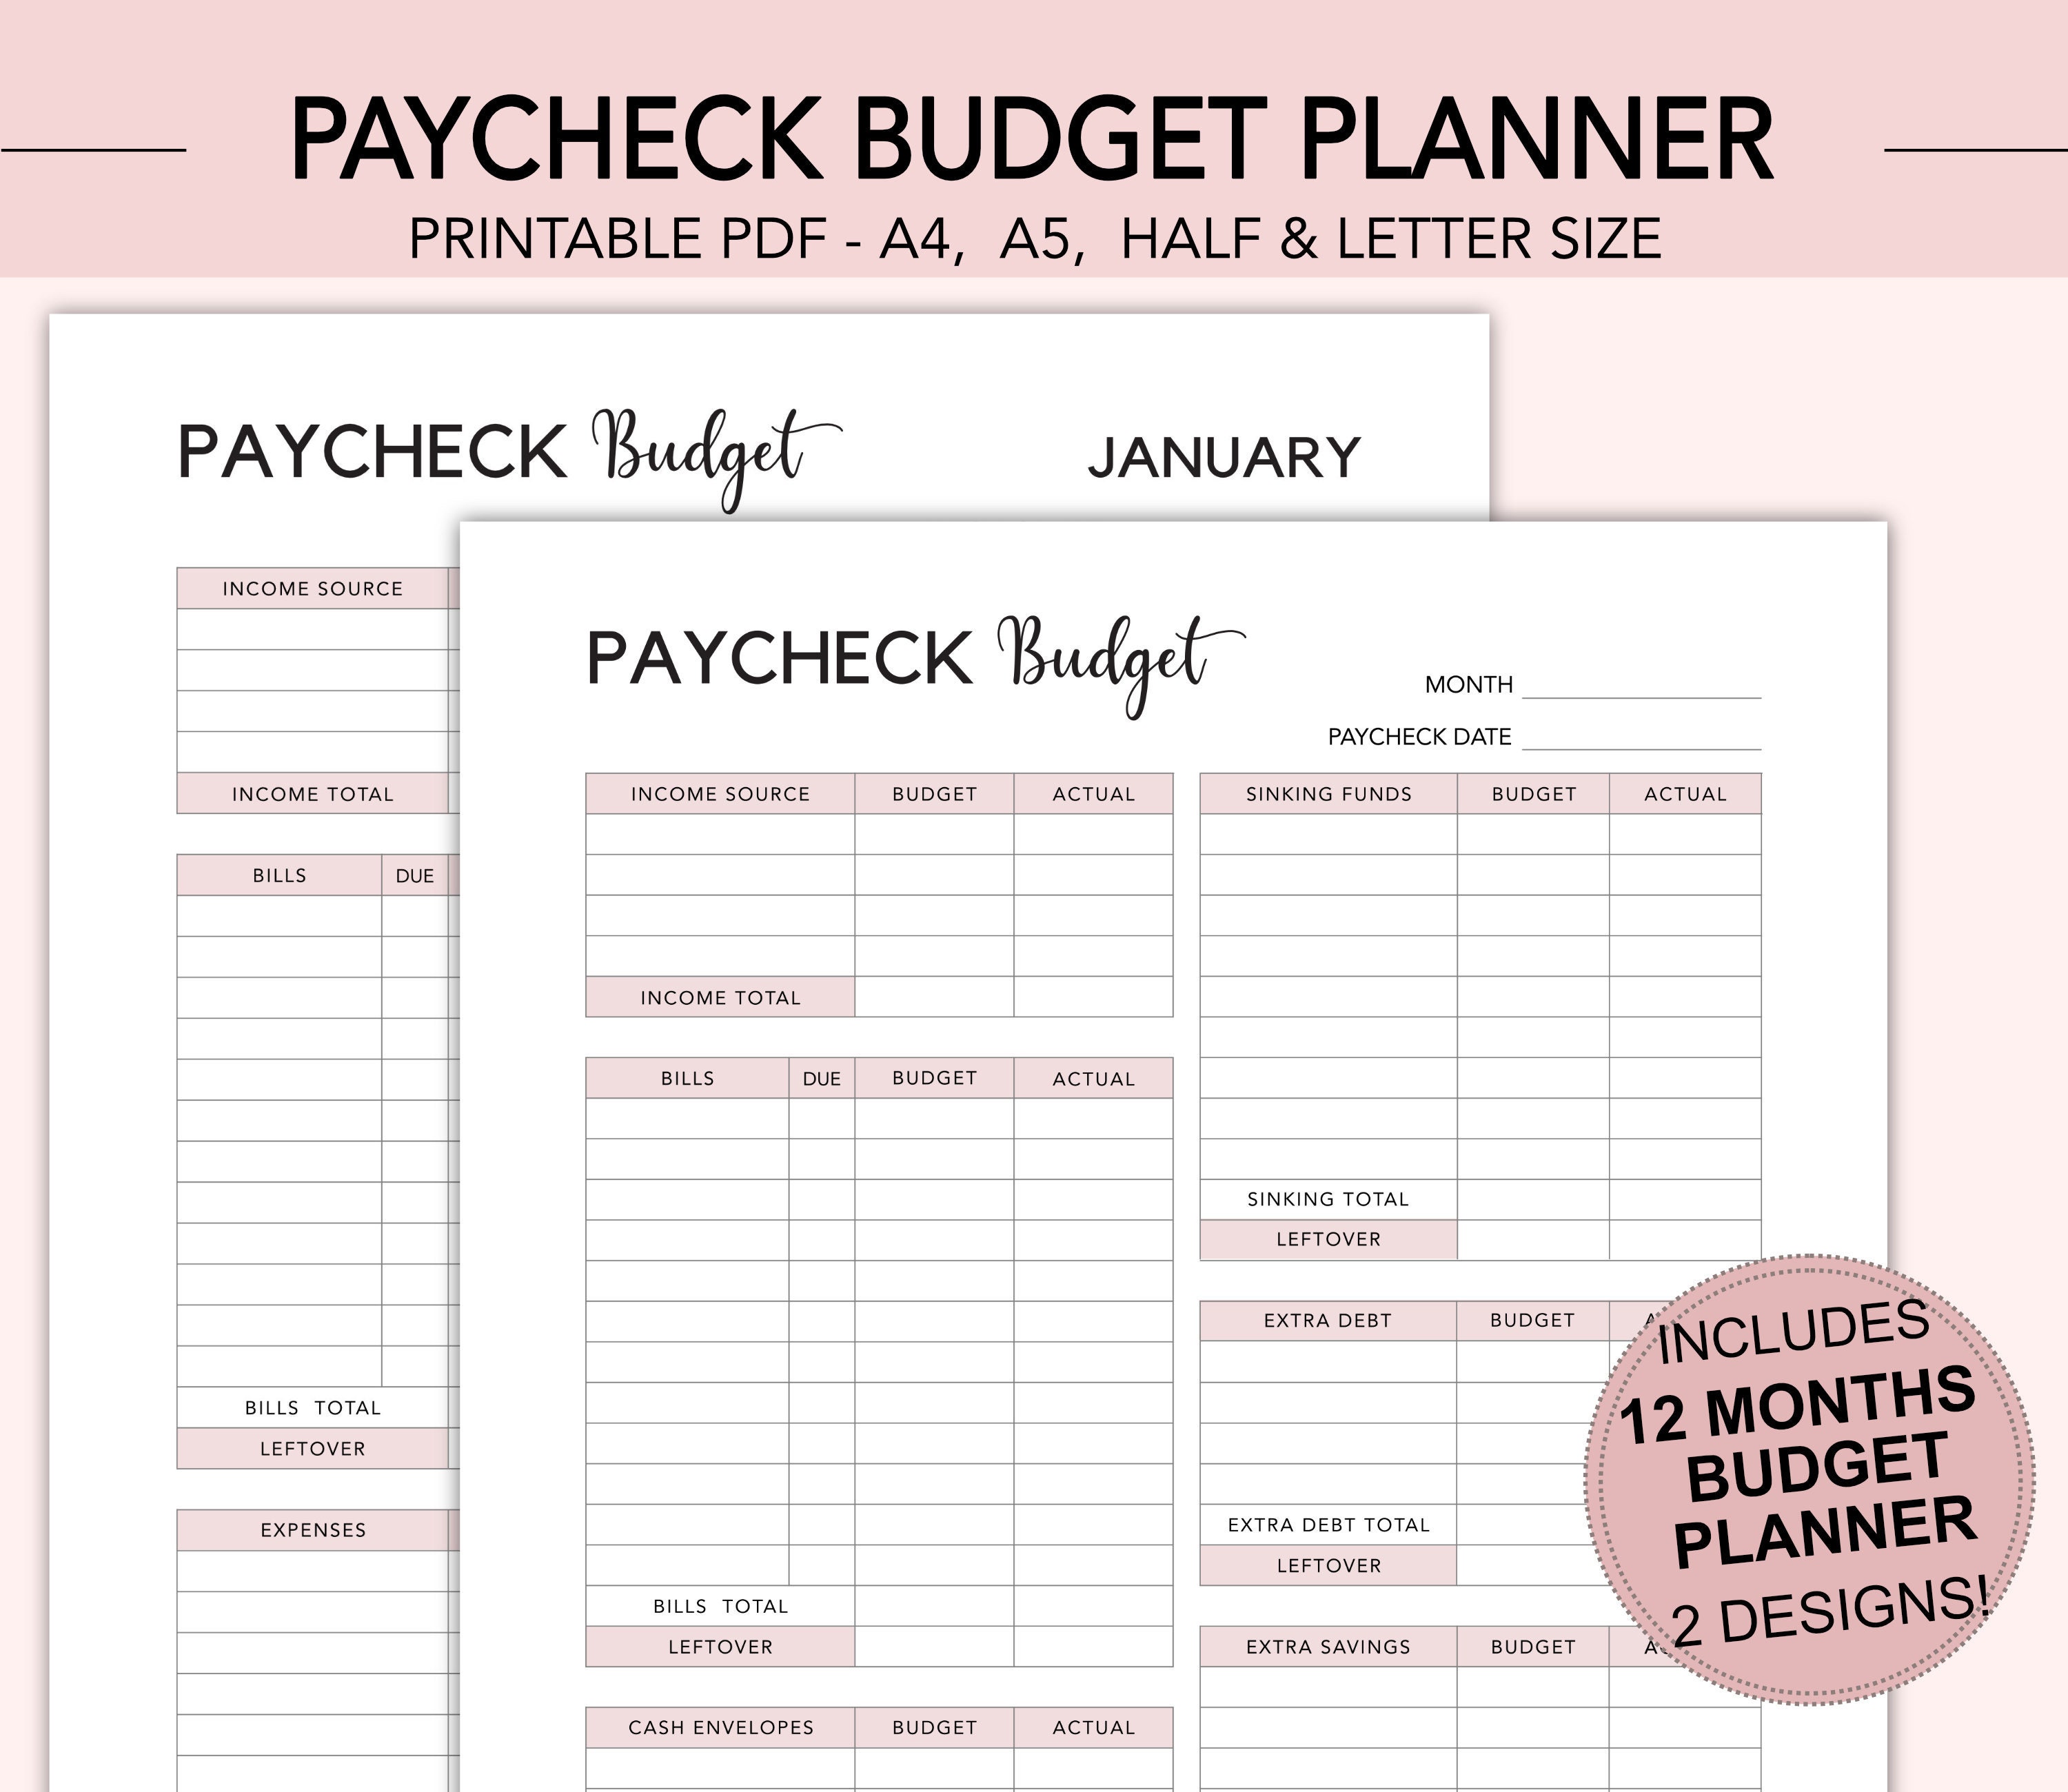 paycheck-budget-planner-paycheck-budget-planner-paycheck-etsy-australia